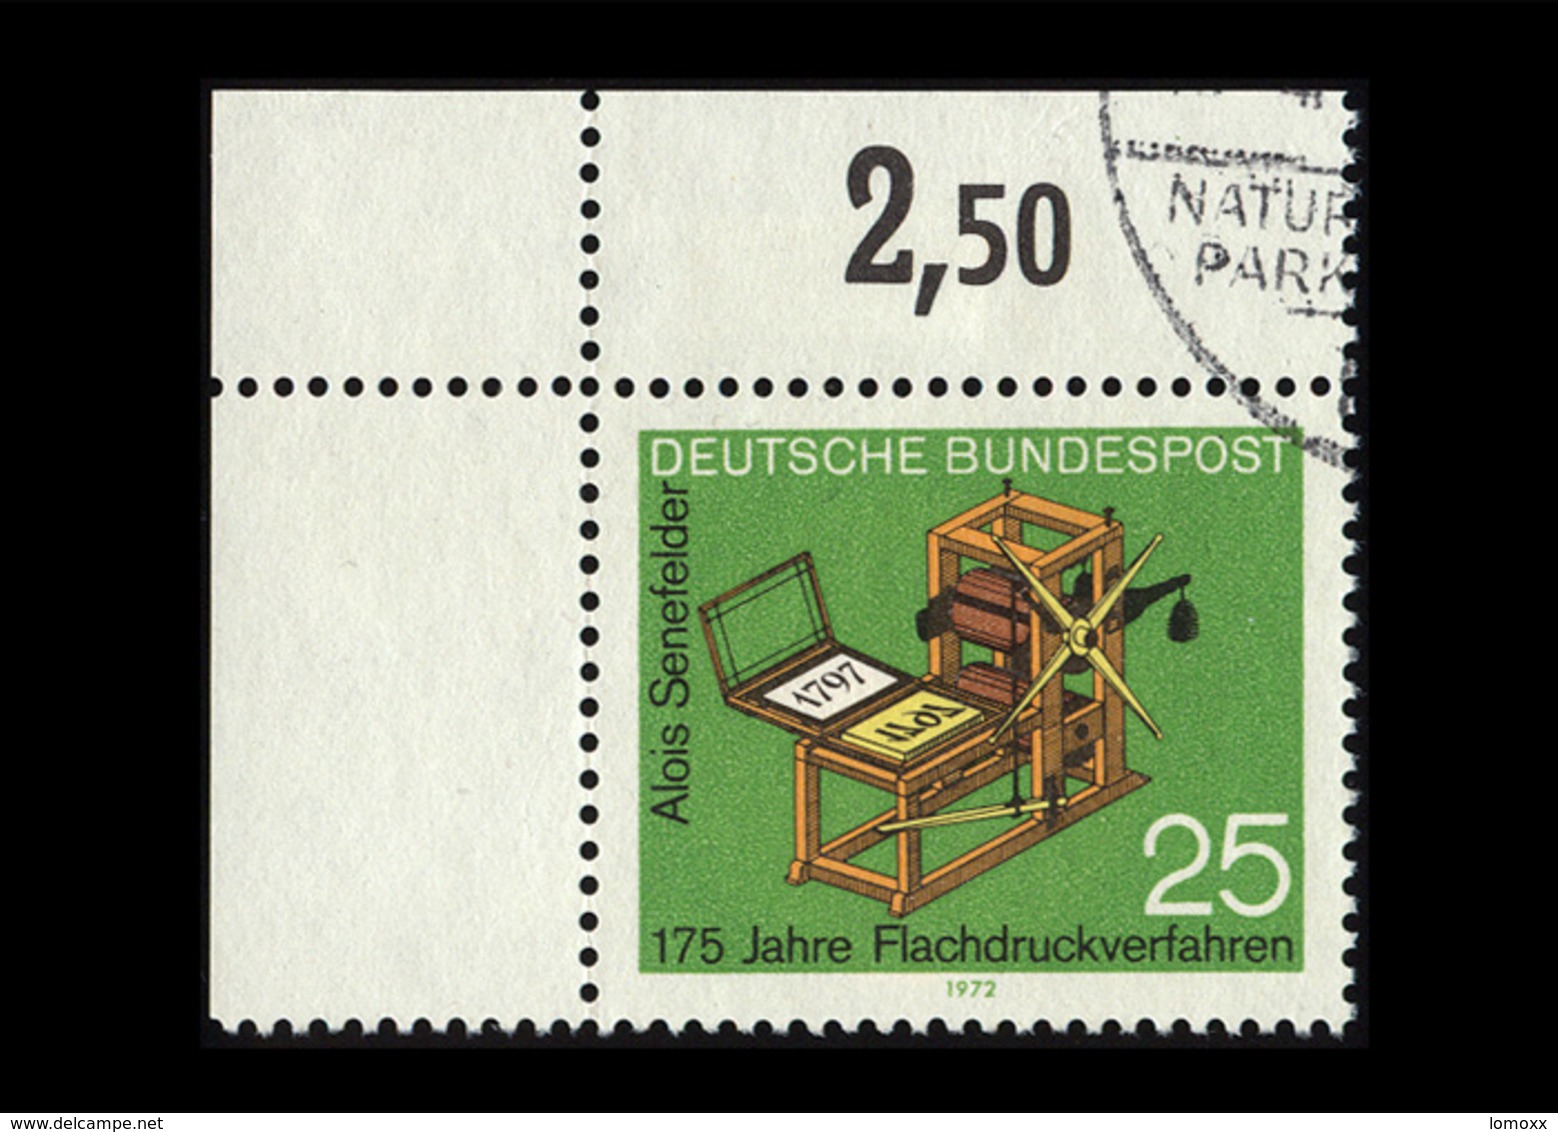 BRD 1972, Michel-Nr. 715, 175 Jahre Flachdruckverfahren, 25 Pf., Eckrand Oben Links, Gestempelt - Gebraucht